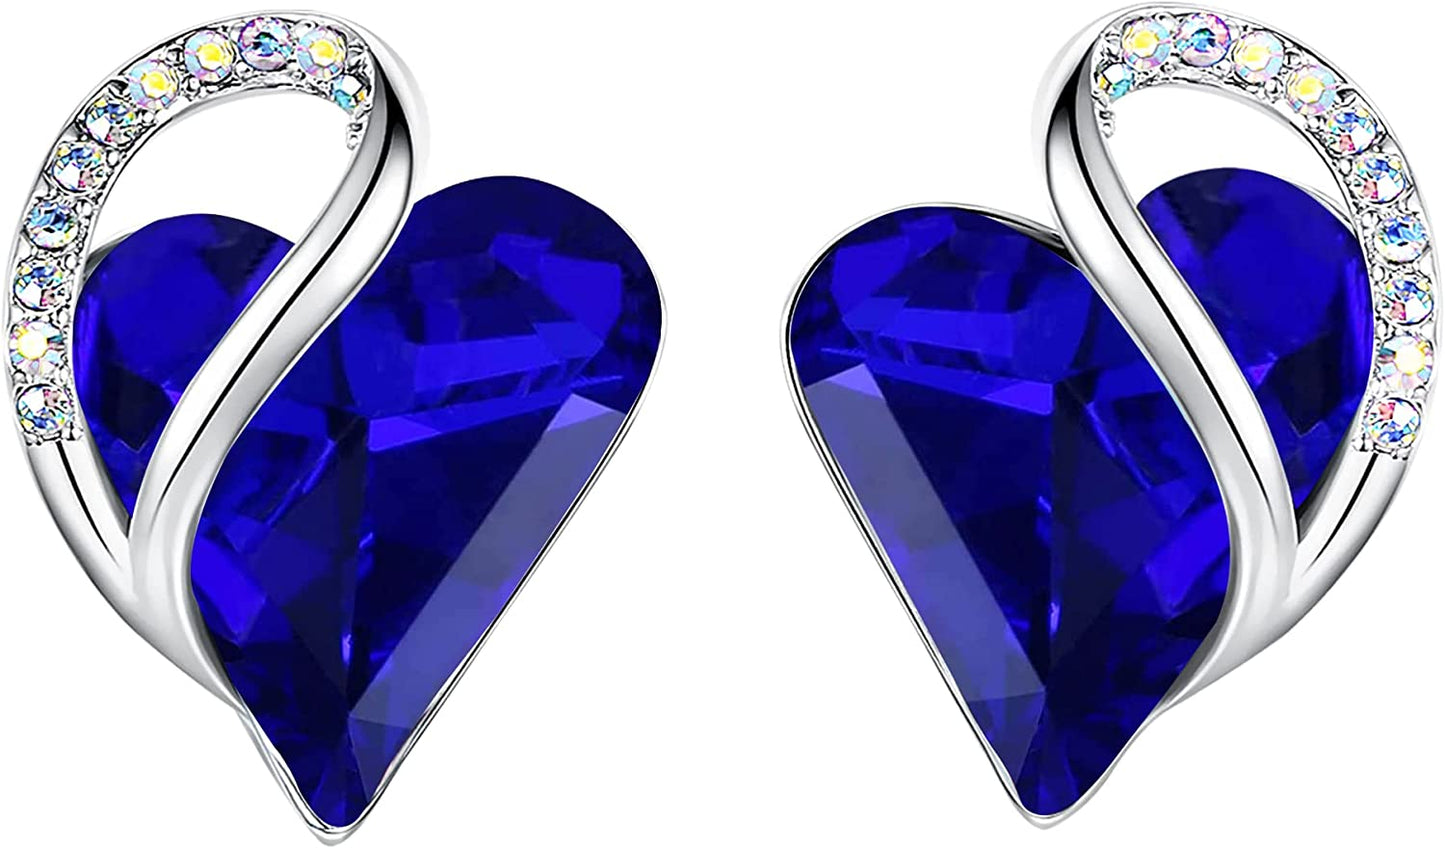 Leafael Infinity Love Heart Crystal Stud Earrings for Women, Silver Tone Fashion Earrings, Gifts for Women, Statement Earrings for Any Occasion